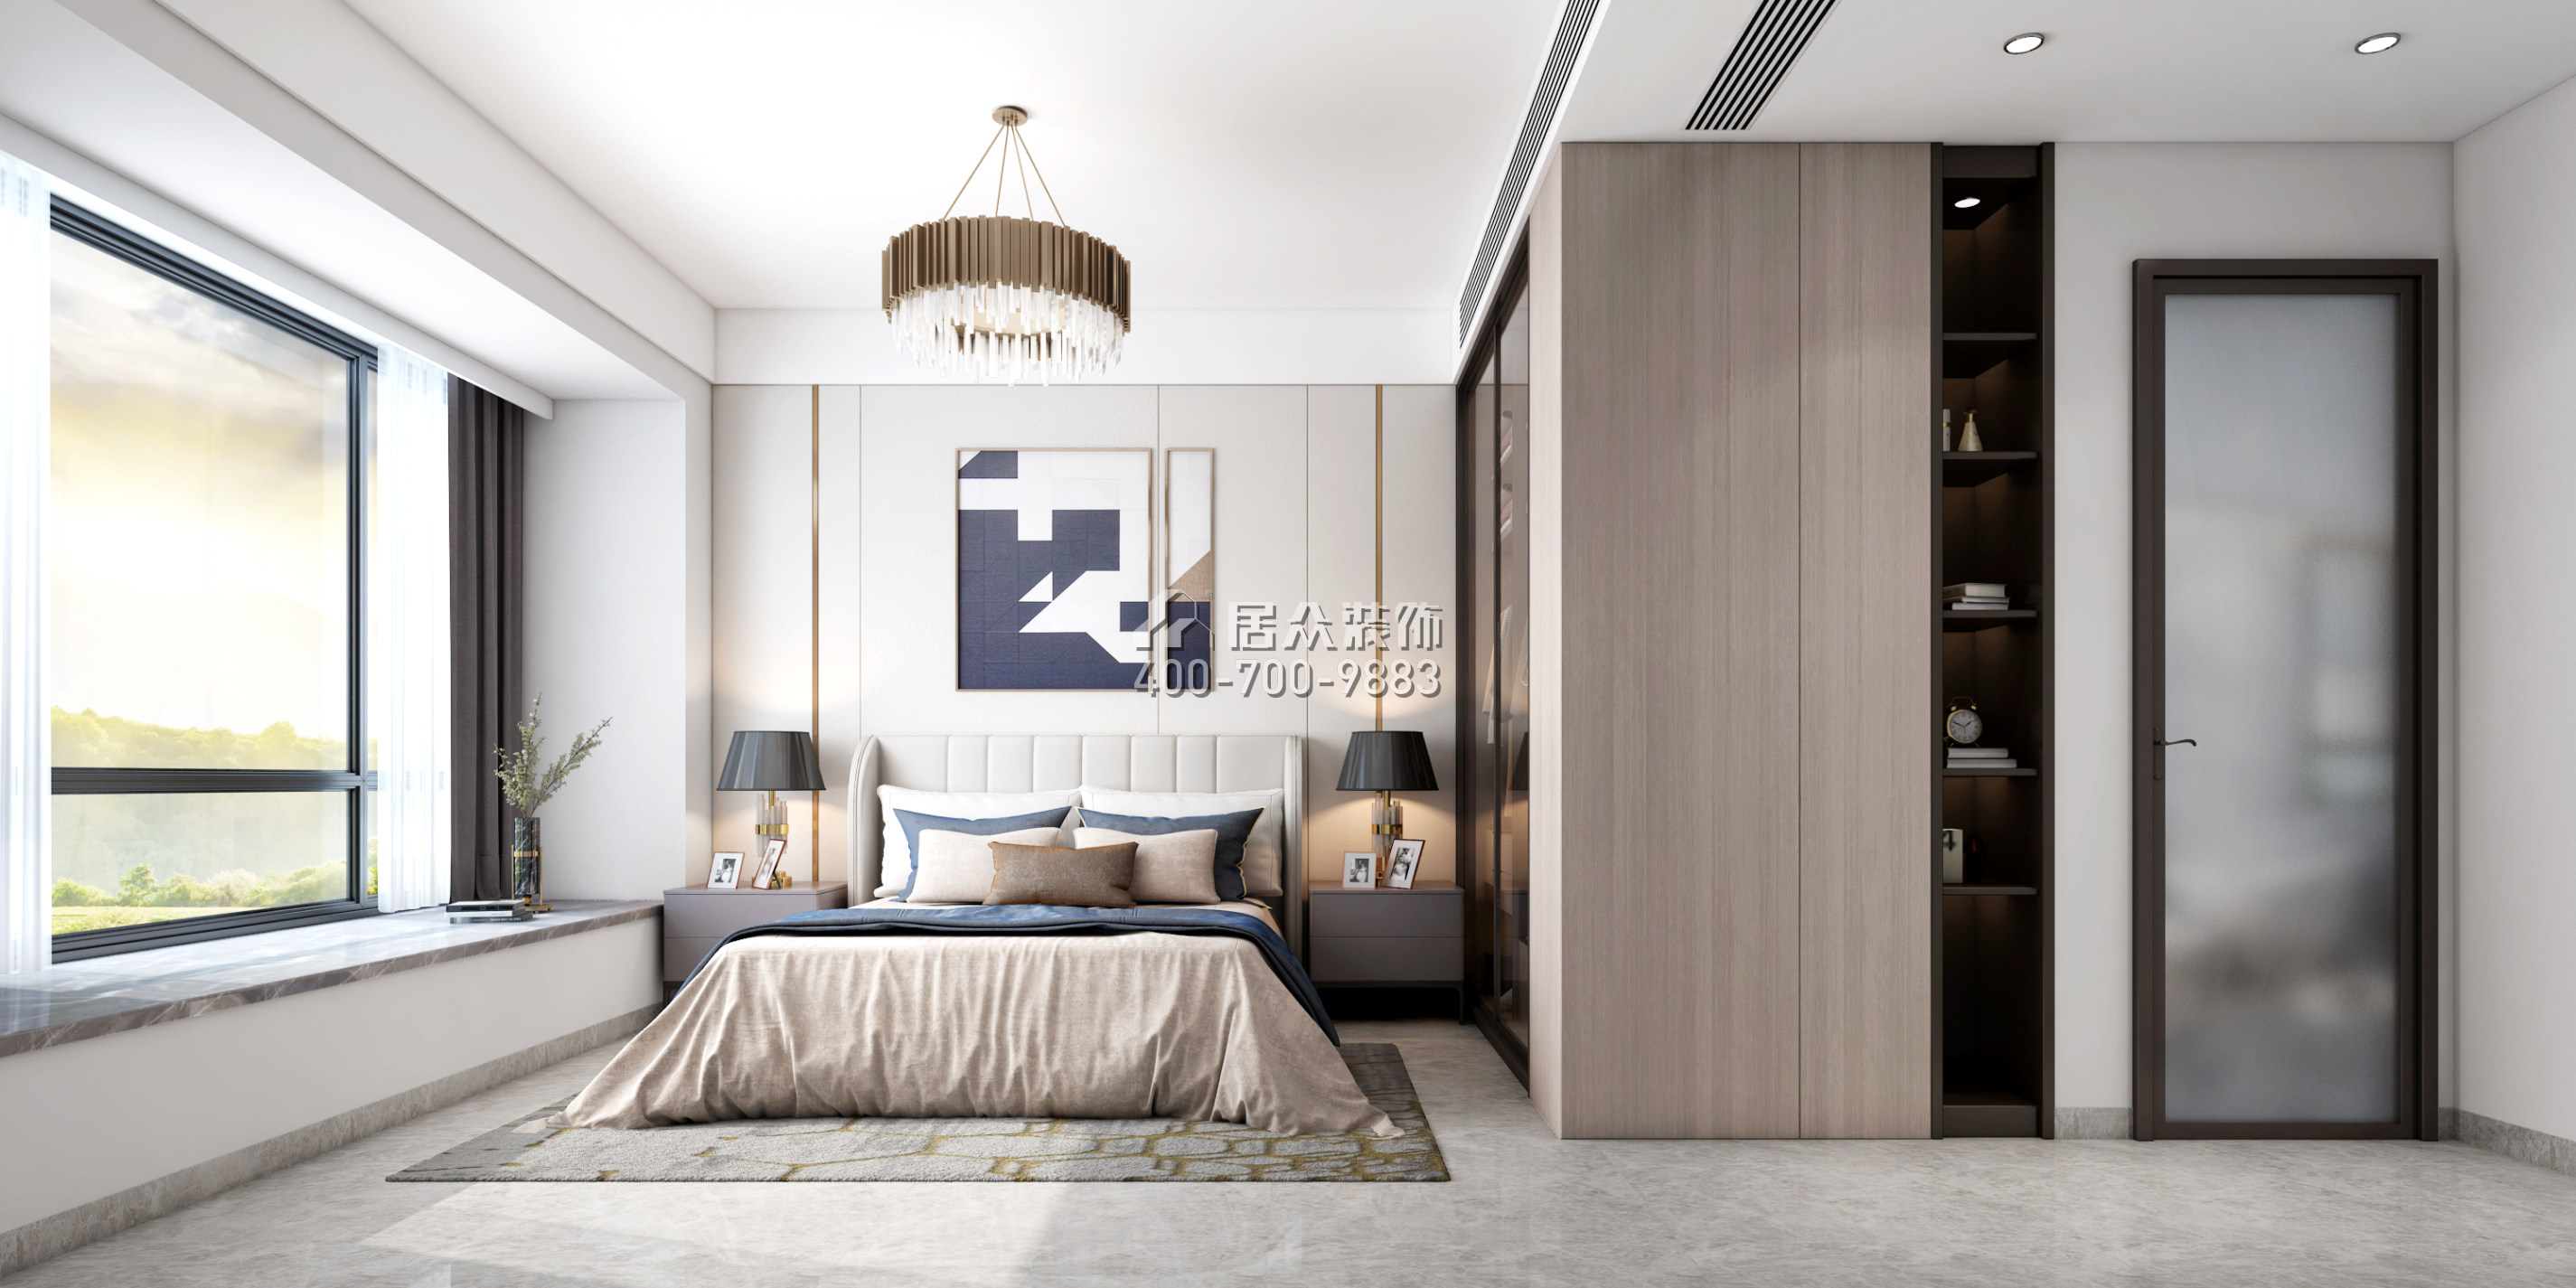 天鹅湖花园二期123平方米现代简约风格平层户型卧室装修效果图